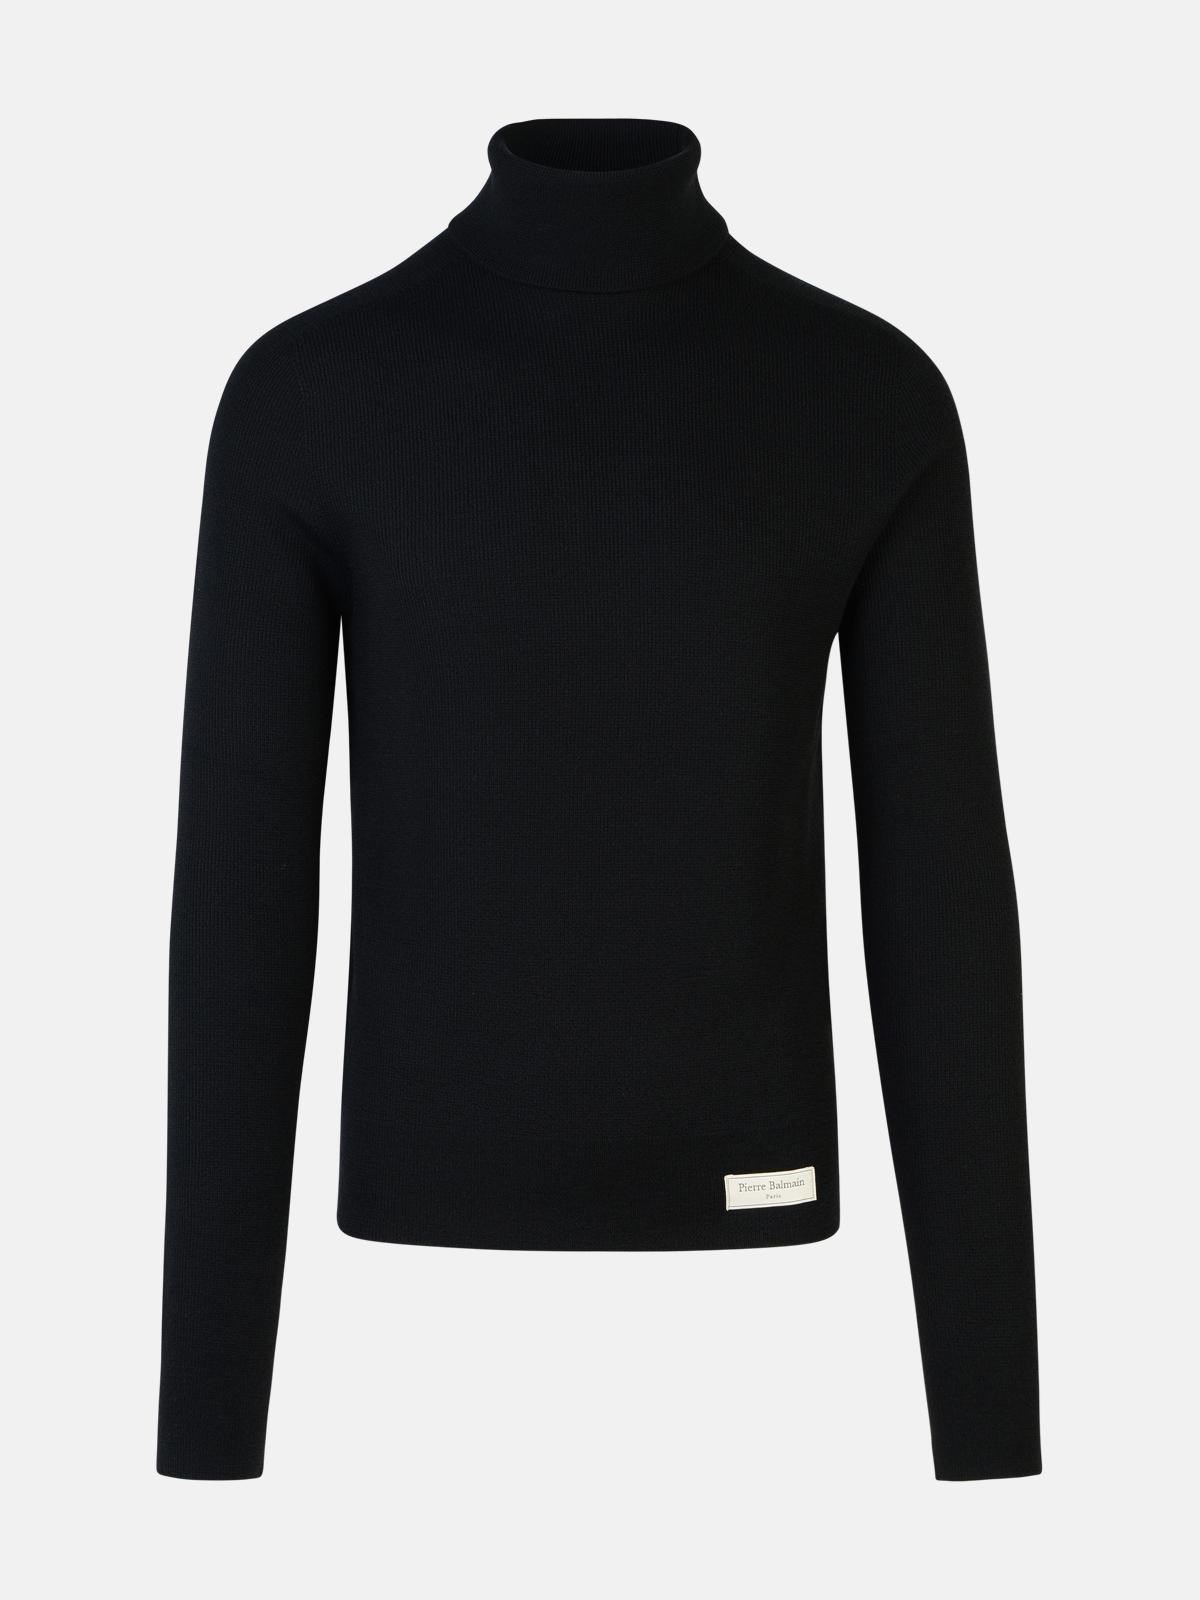 Shop Balmain Black Wool Turtleneck Sweater